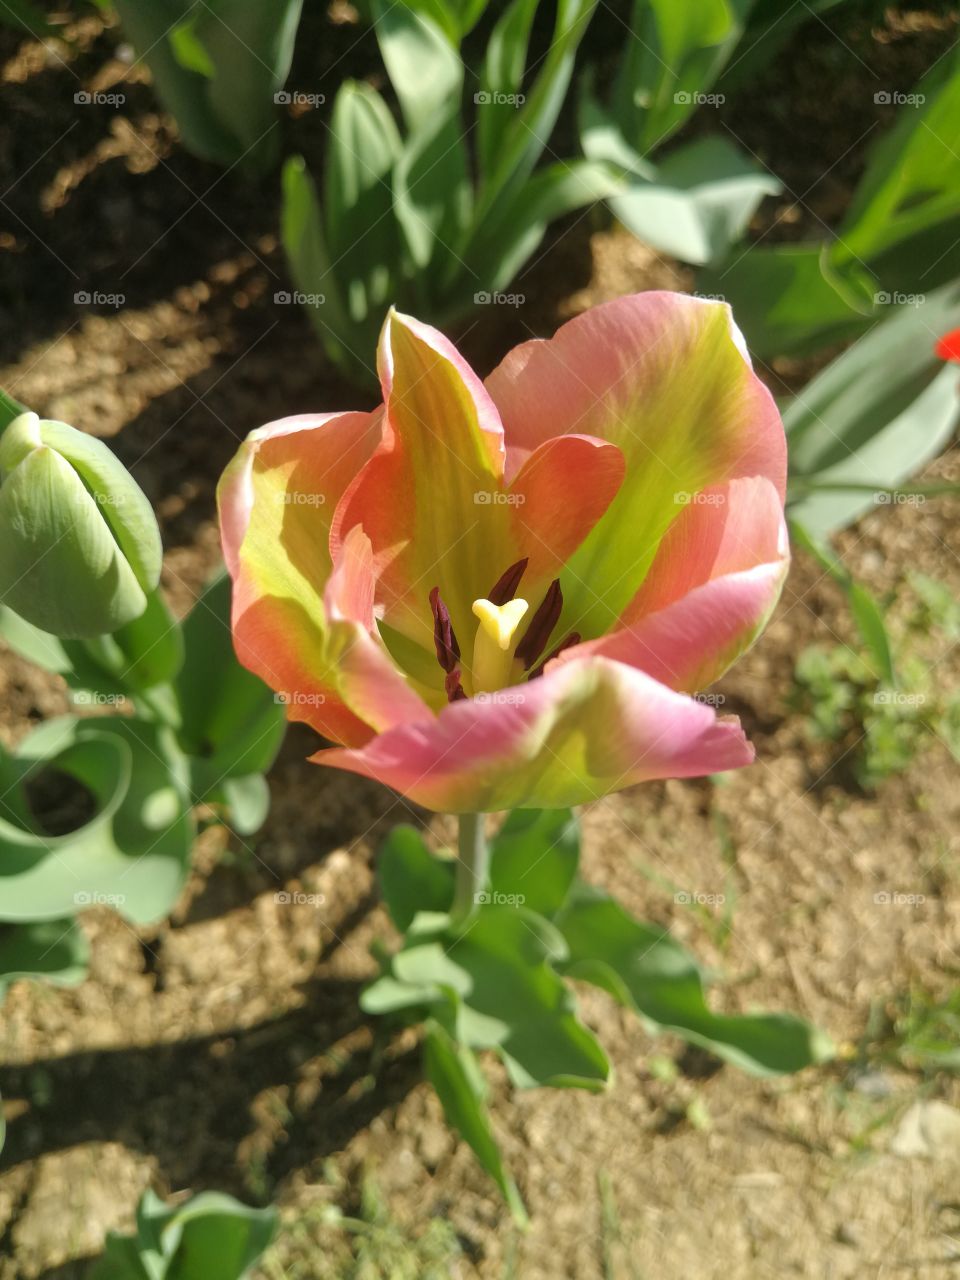 New tulips in the garden